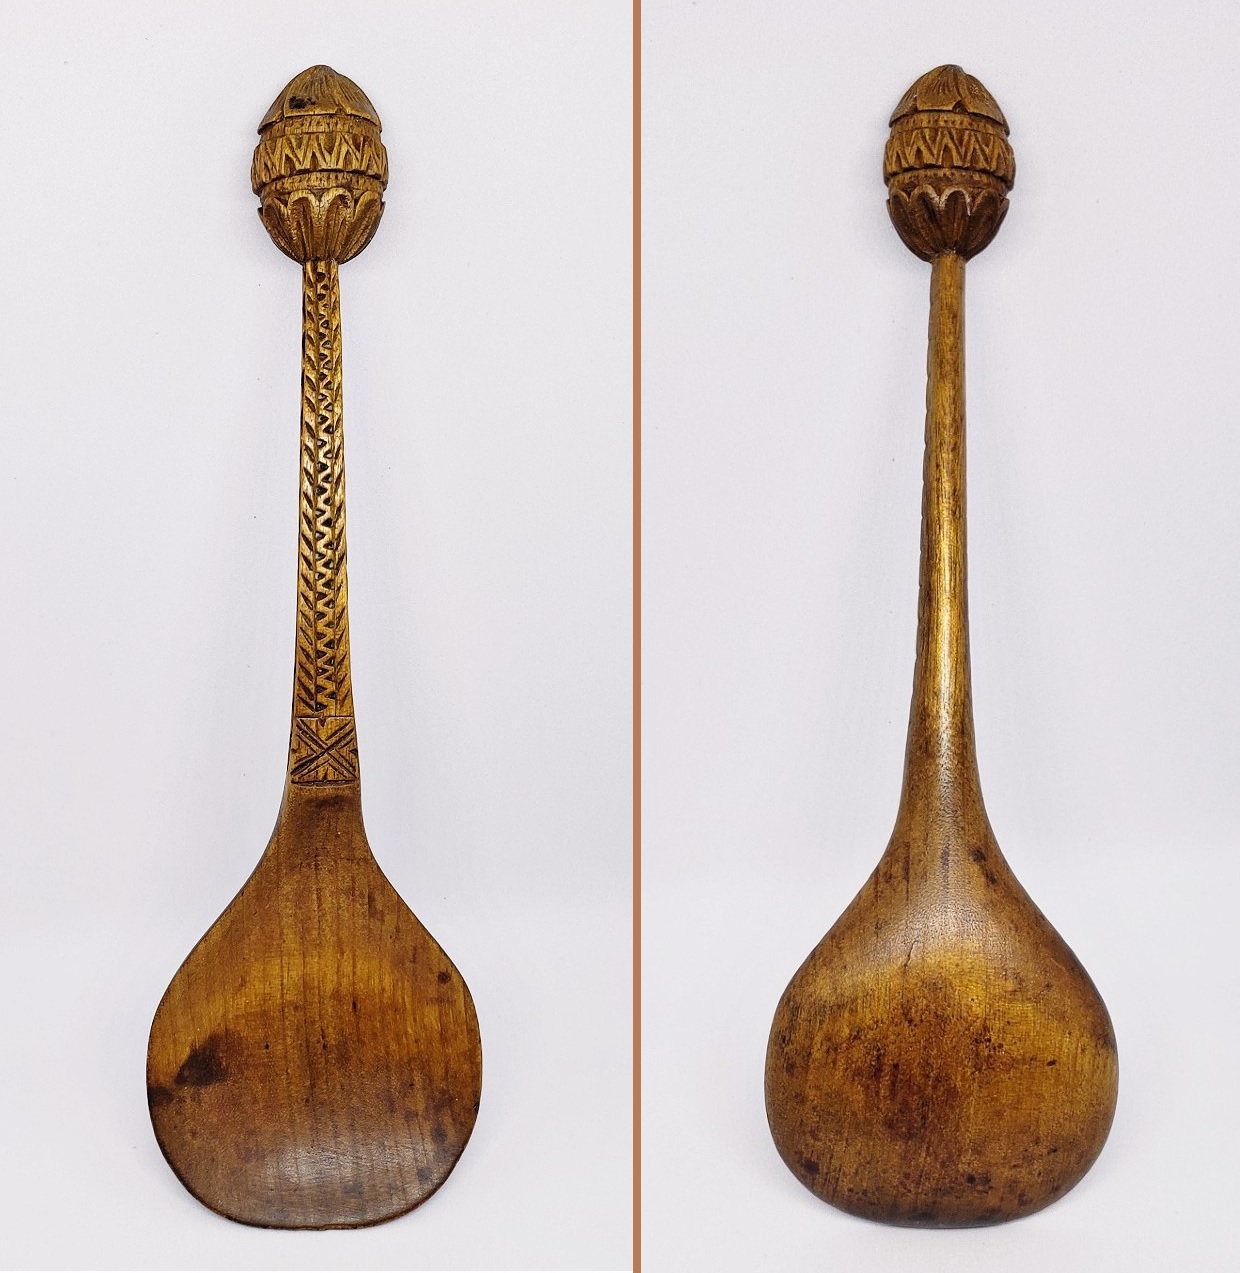 Norwegian-wooden-knop-top-spoon-composite.jpg